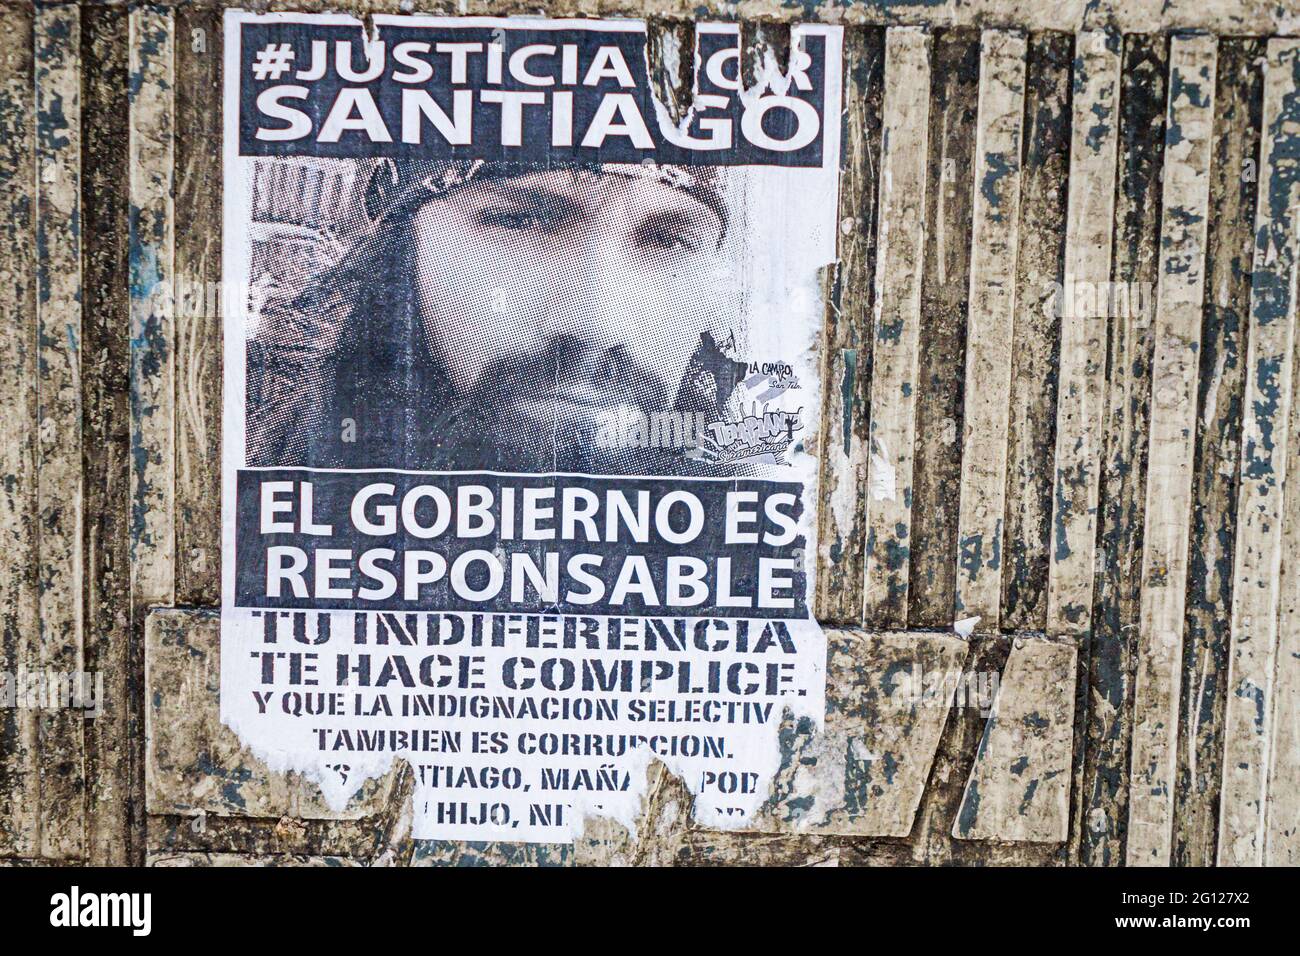 Argentine Buenos Aires blé pâte circulaire Santiago Maldonado disparu activiste politique brutalité police corruption victime justice demande pr Banque D'Images